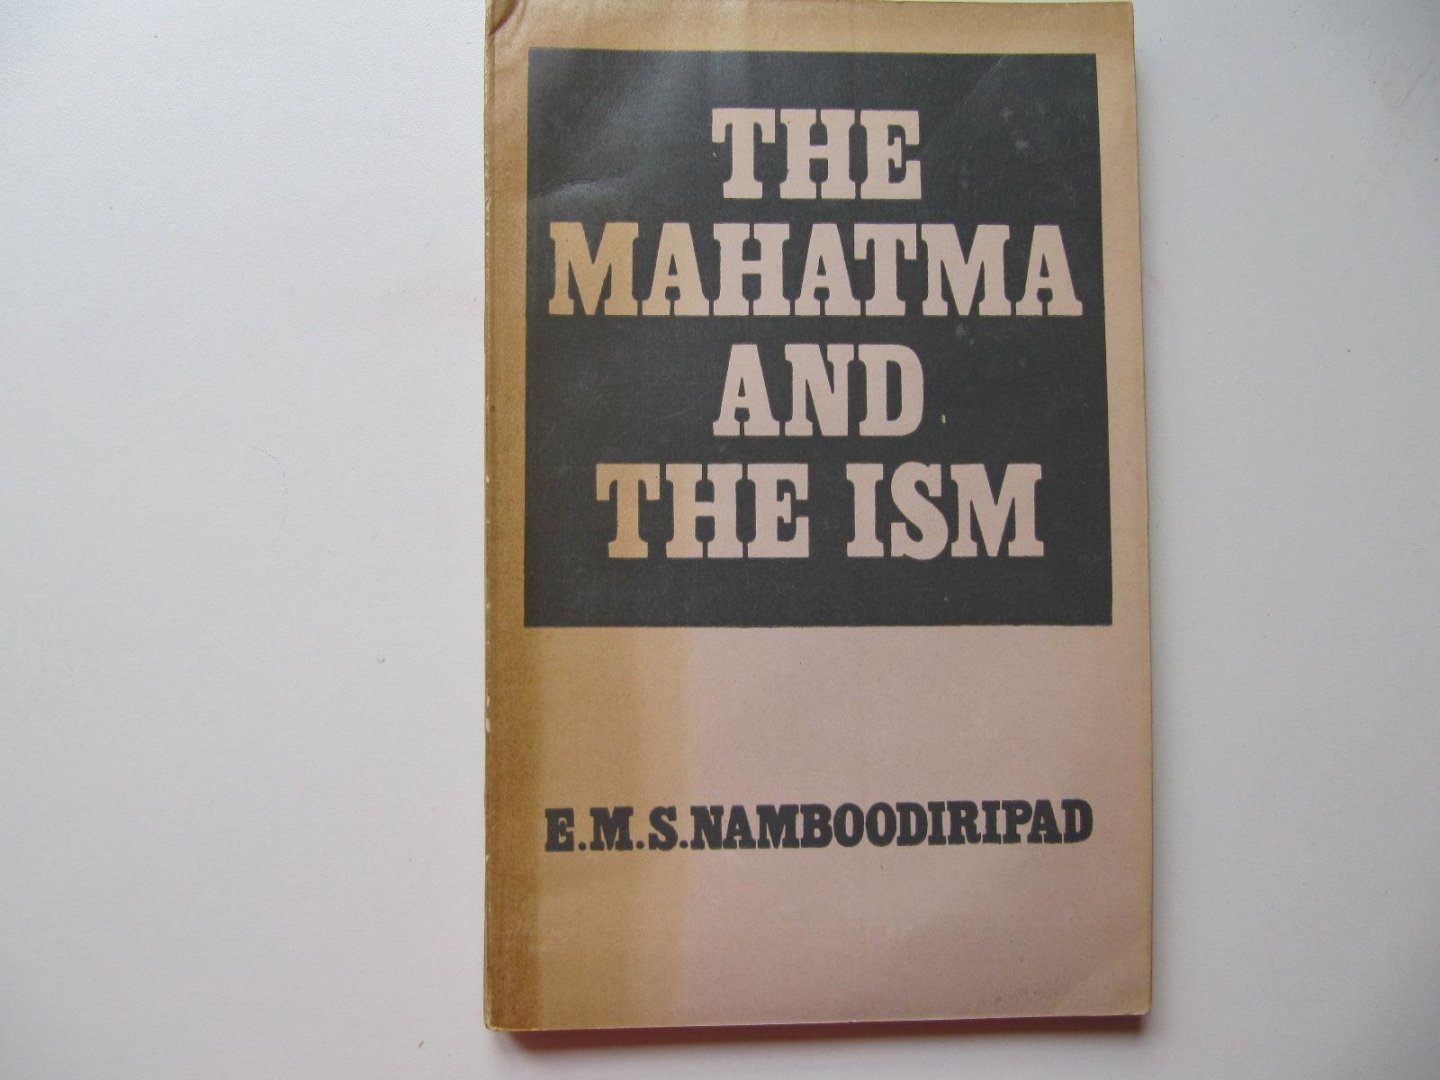 E.M.S. Namboodiripad - The Mahatma And The Ism